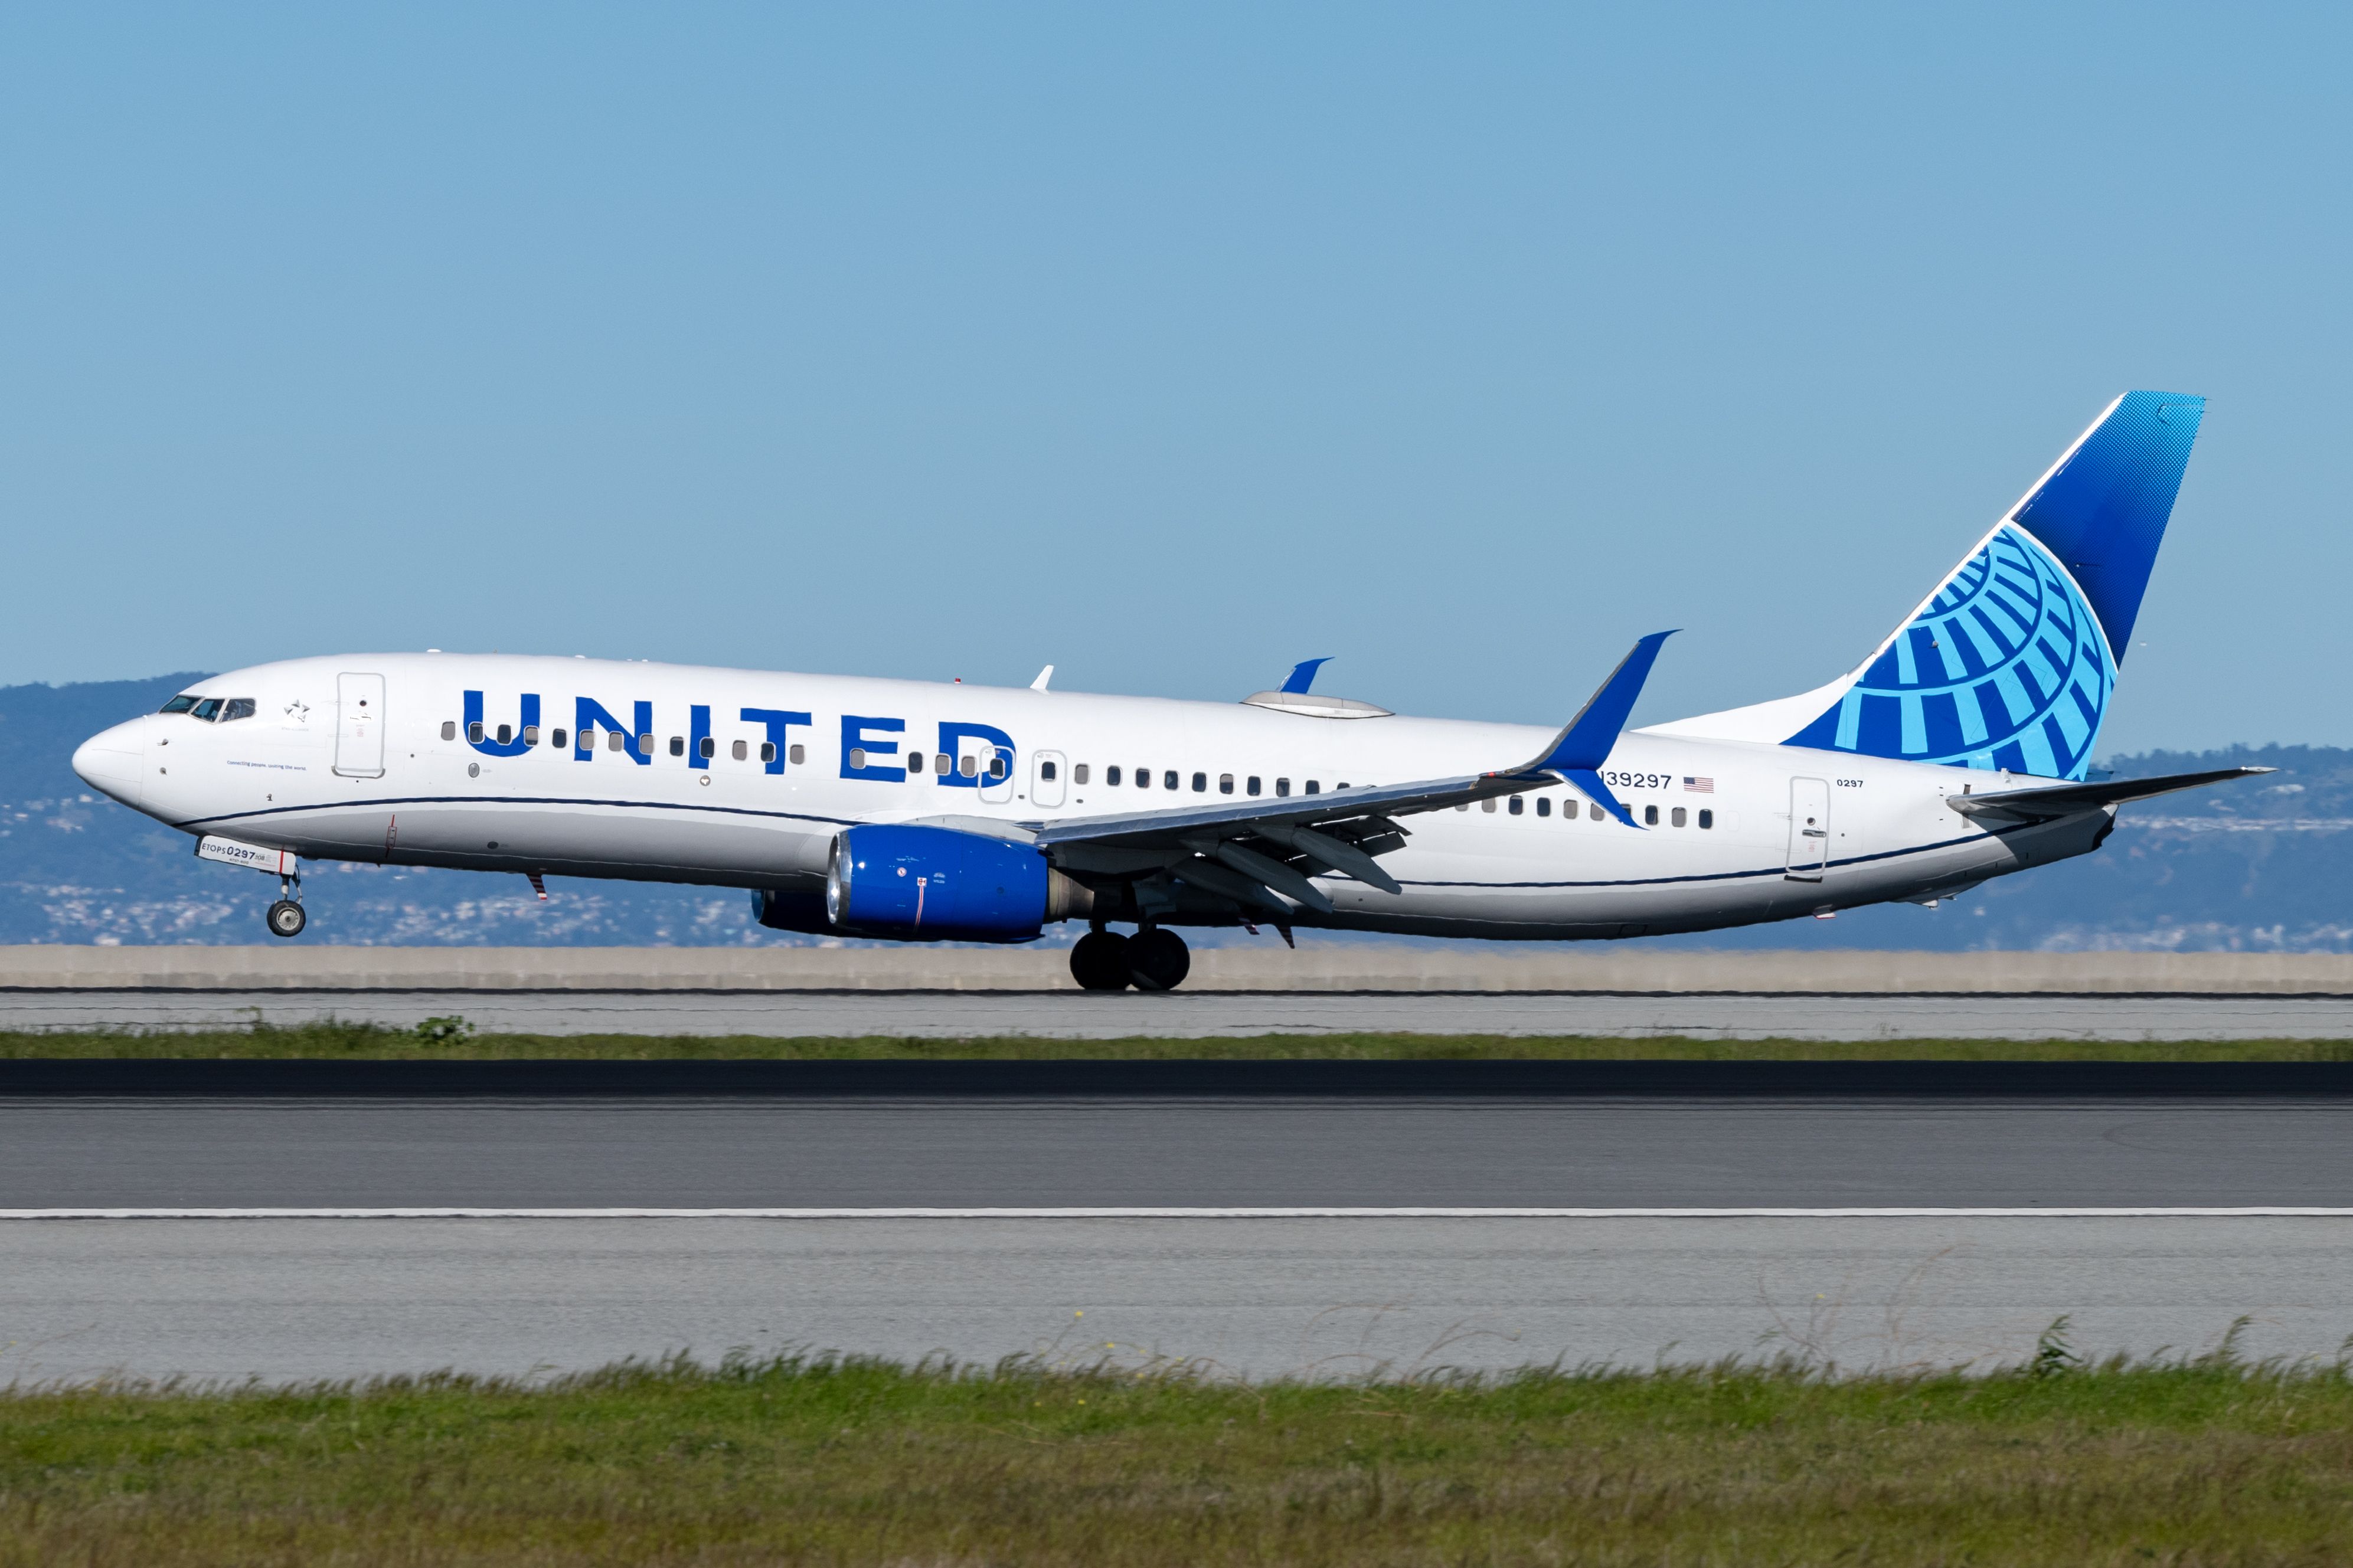 United Airlines Boeing 737-800 N39297